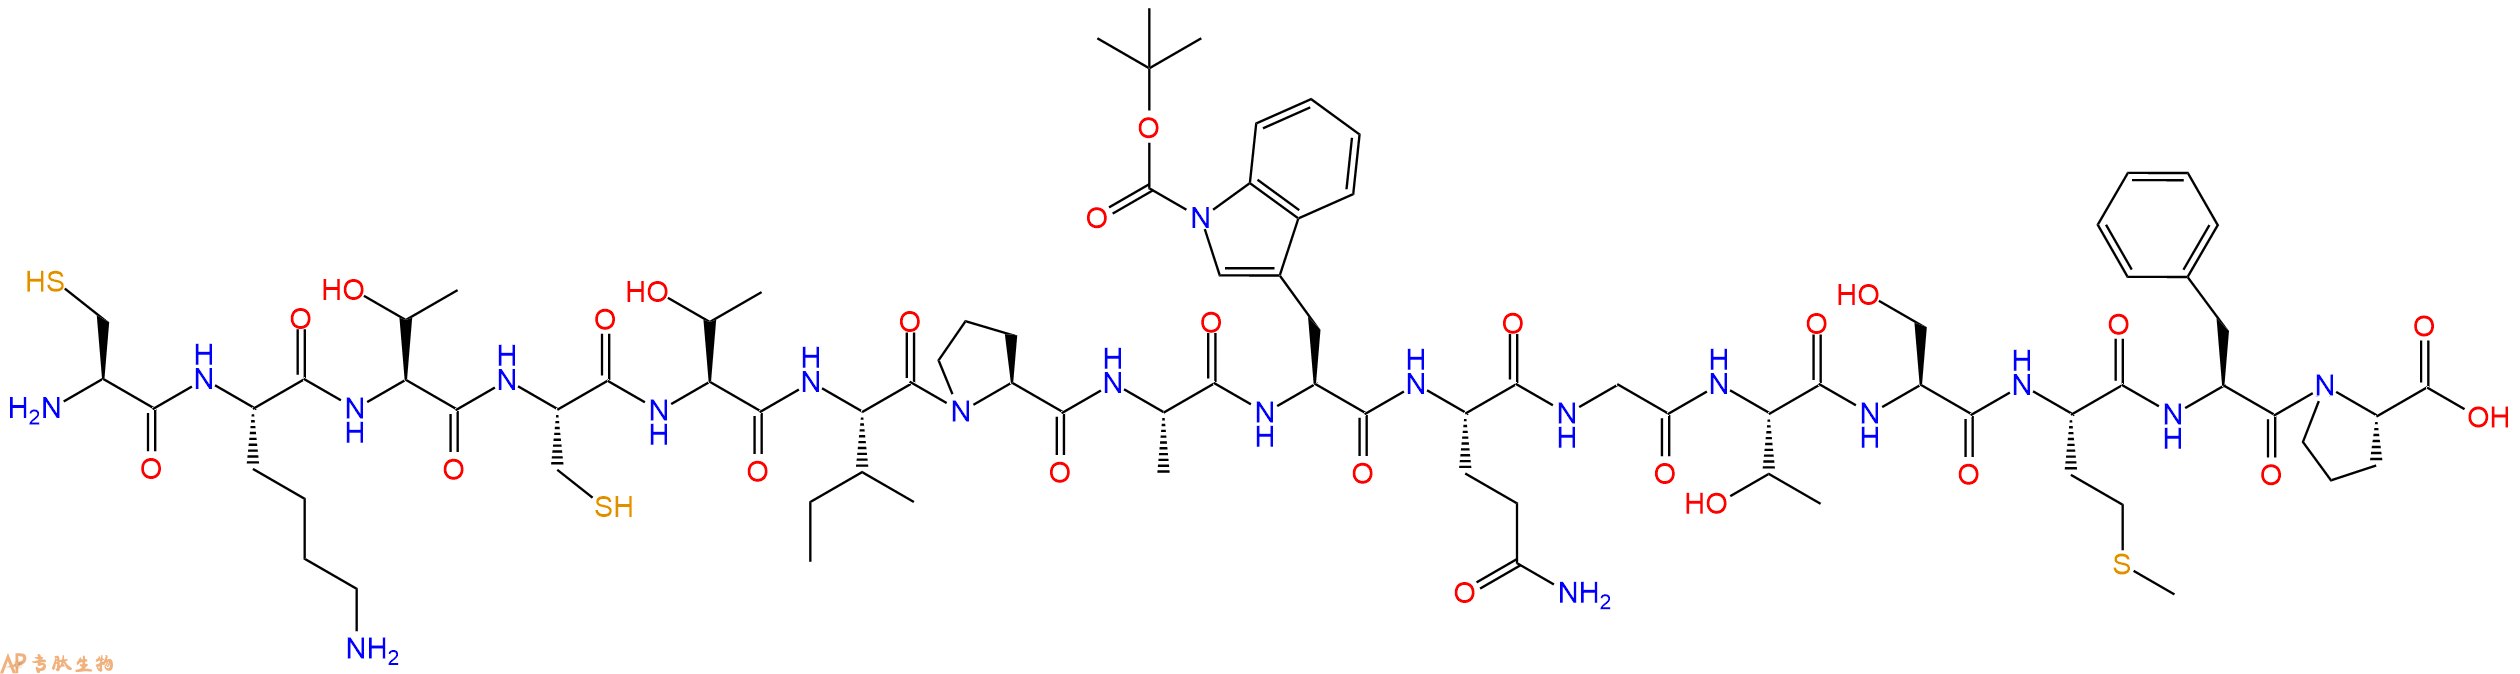 专肽生物产品H2N-Cys-Lys-Thr-Cys-Thr-Ile-Pro-Ala-Trp(Boc)-Gln-Gly-Thr-Ser-Met-Phe-Pro-COOH